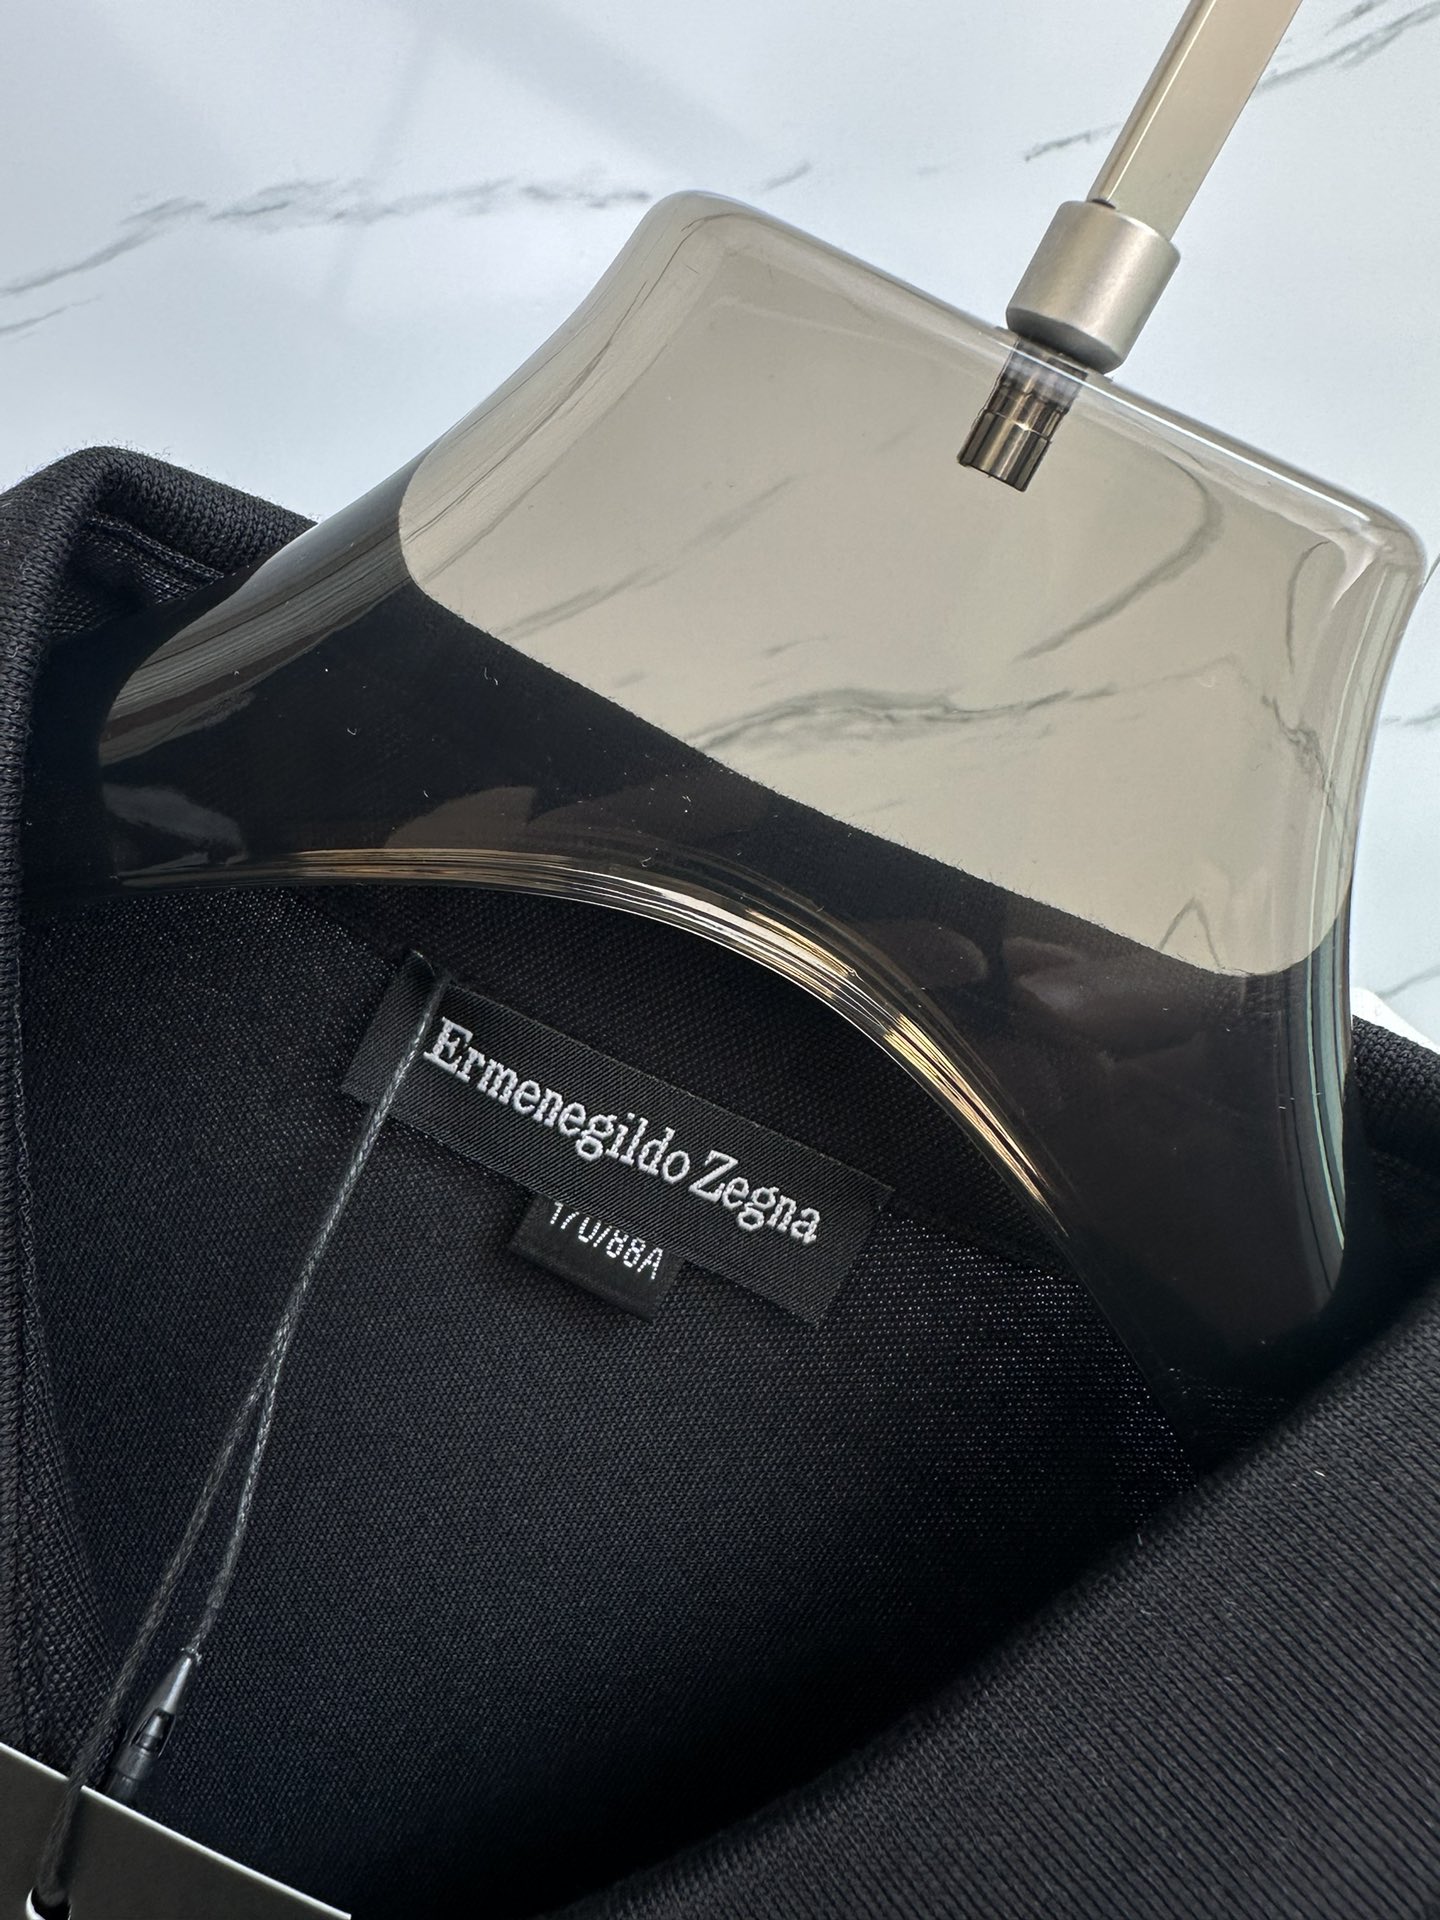 杰尼亚最新最顶级版本Polo衫短袖最顶级的品质.玉蚕丝顶级制作工艺进口面料专柜款独特设计采用进口高端订制